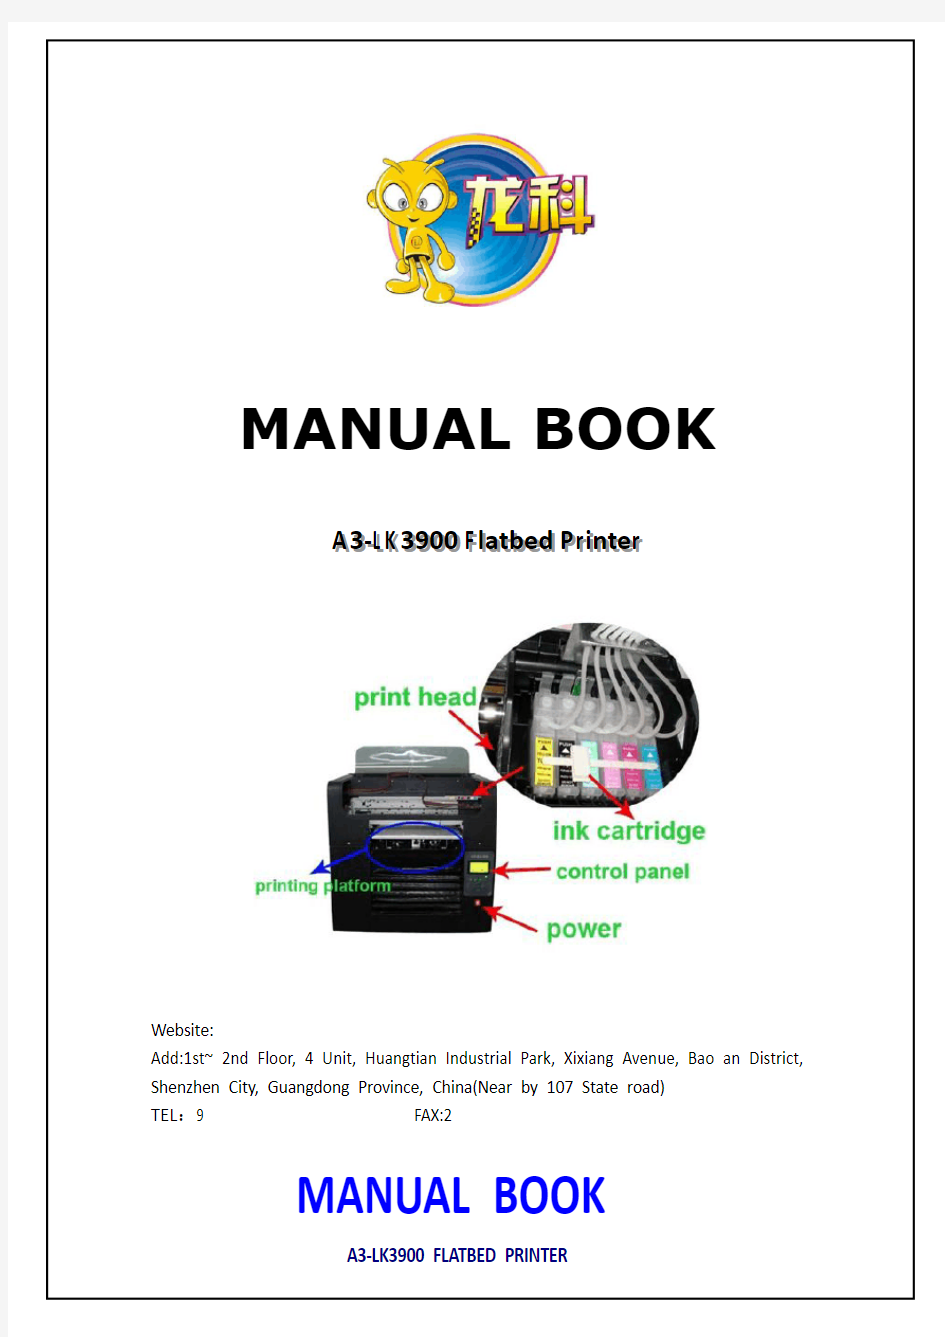 打印机产品说明书